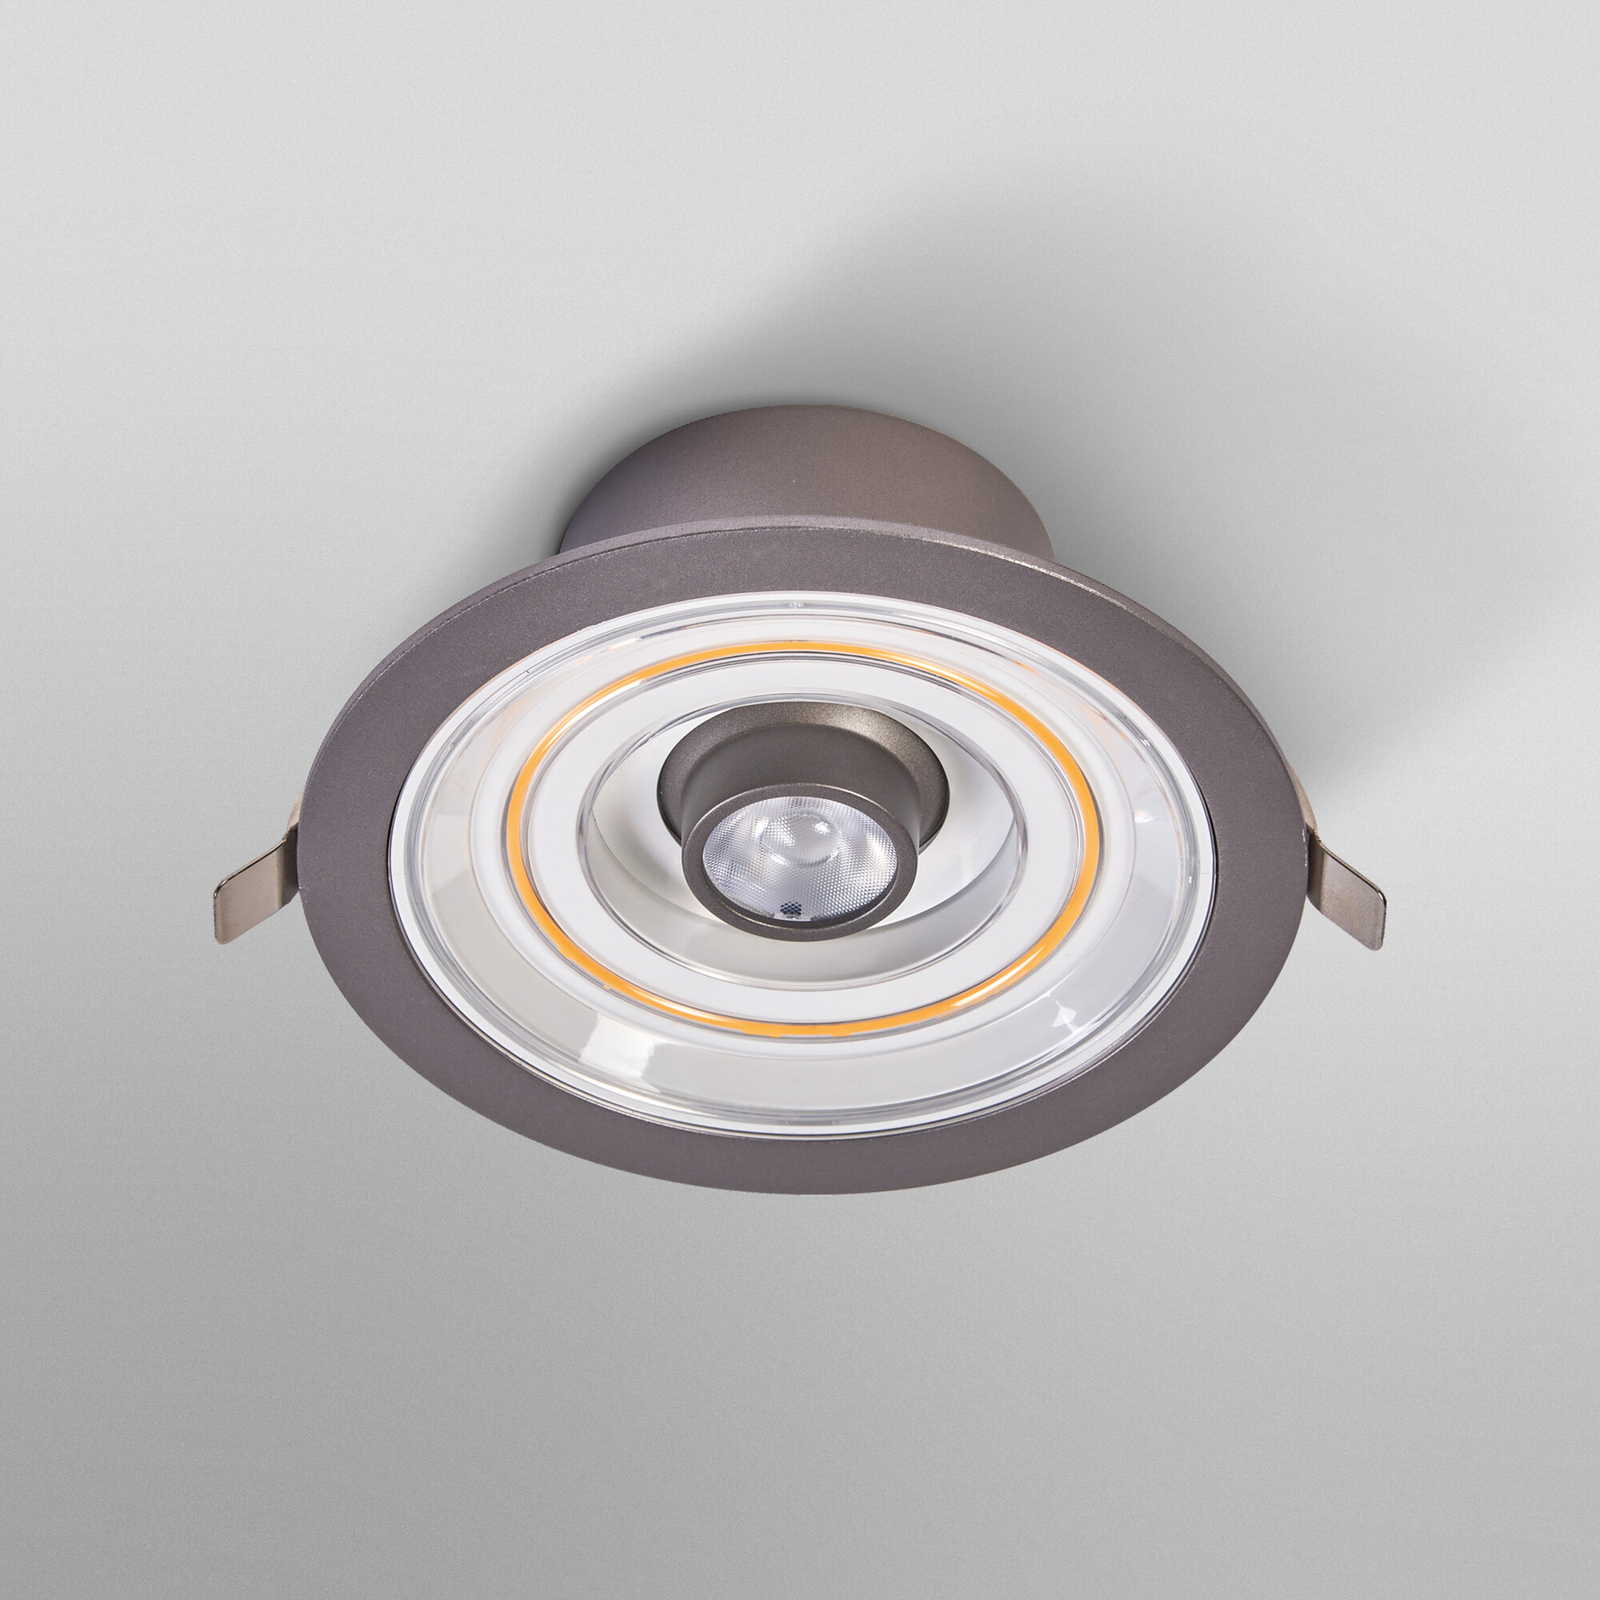 Ledvance Decor Filament Halo LED downlight